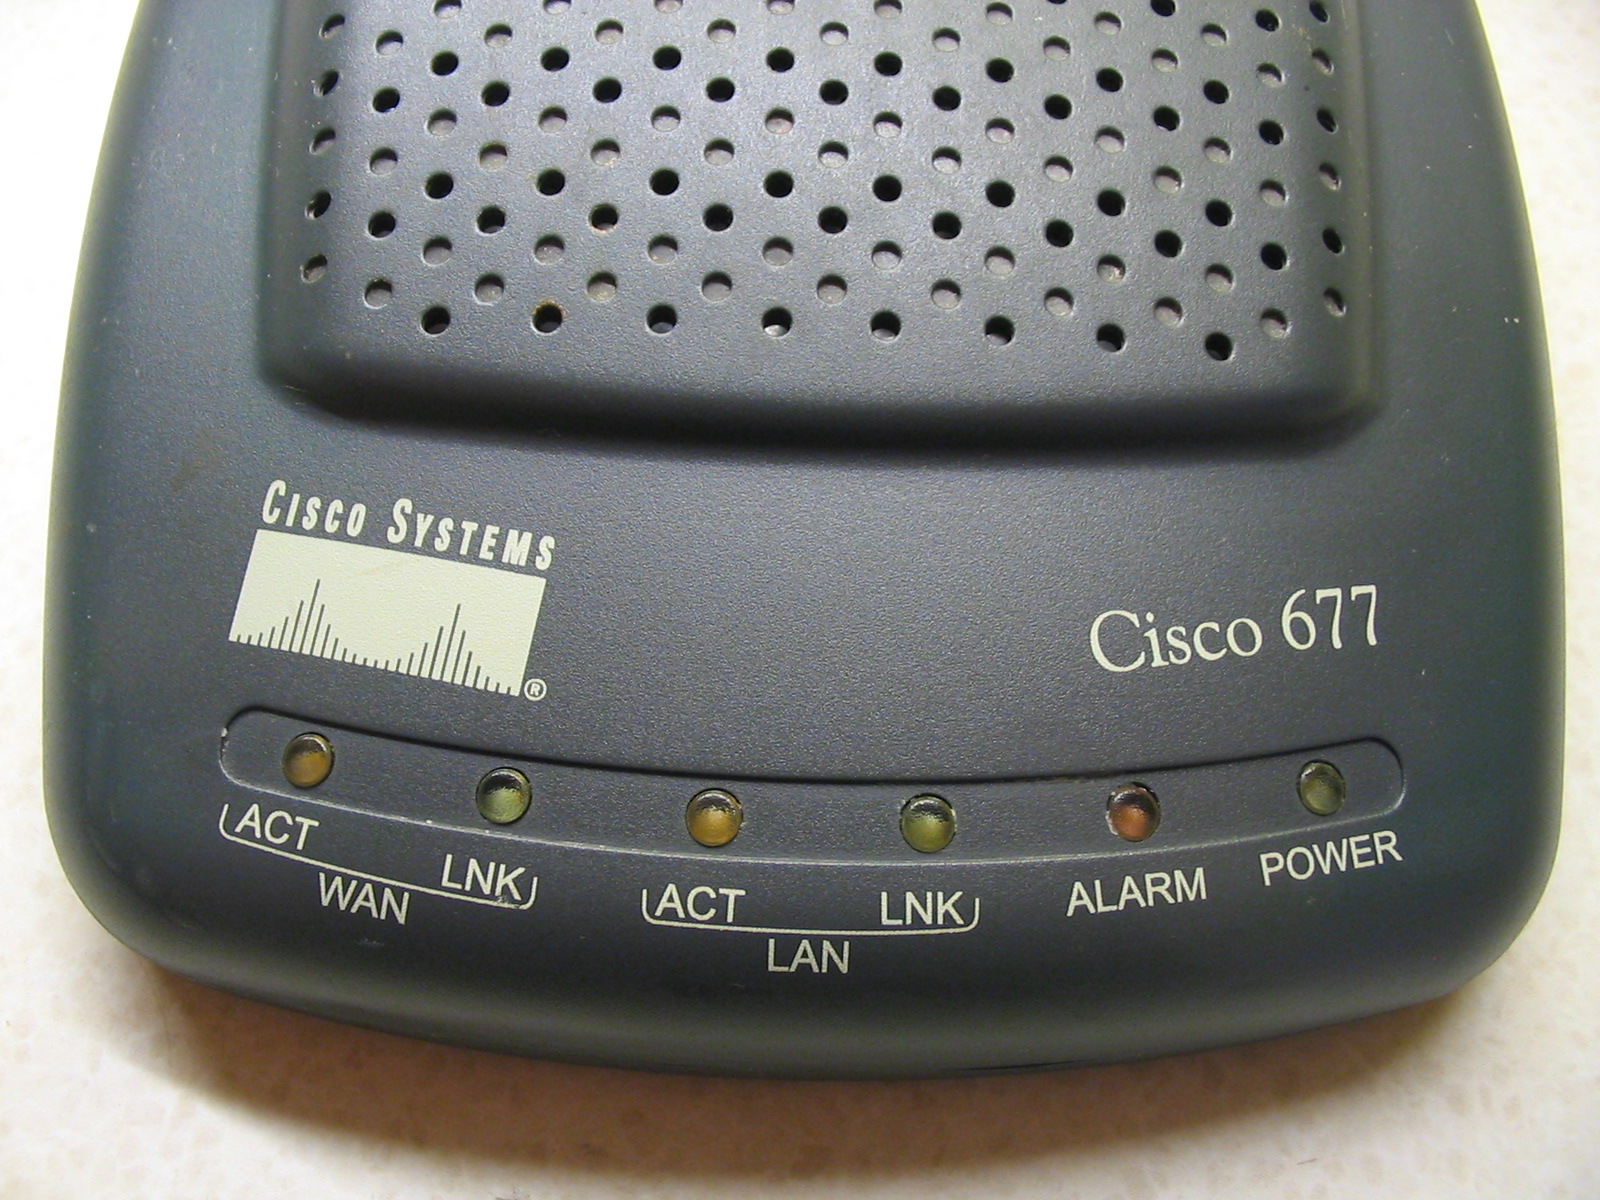 Router_Cisco_677_%28ubt%29_1.jpeg